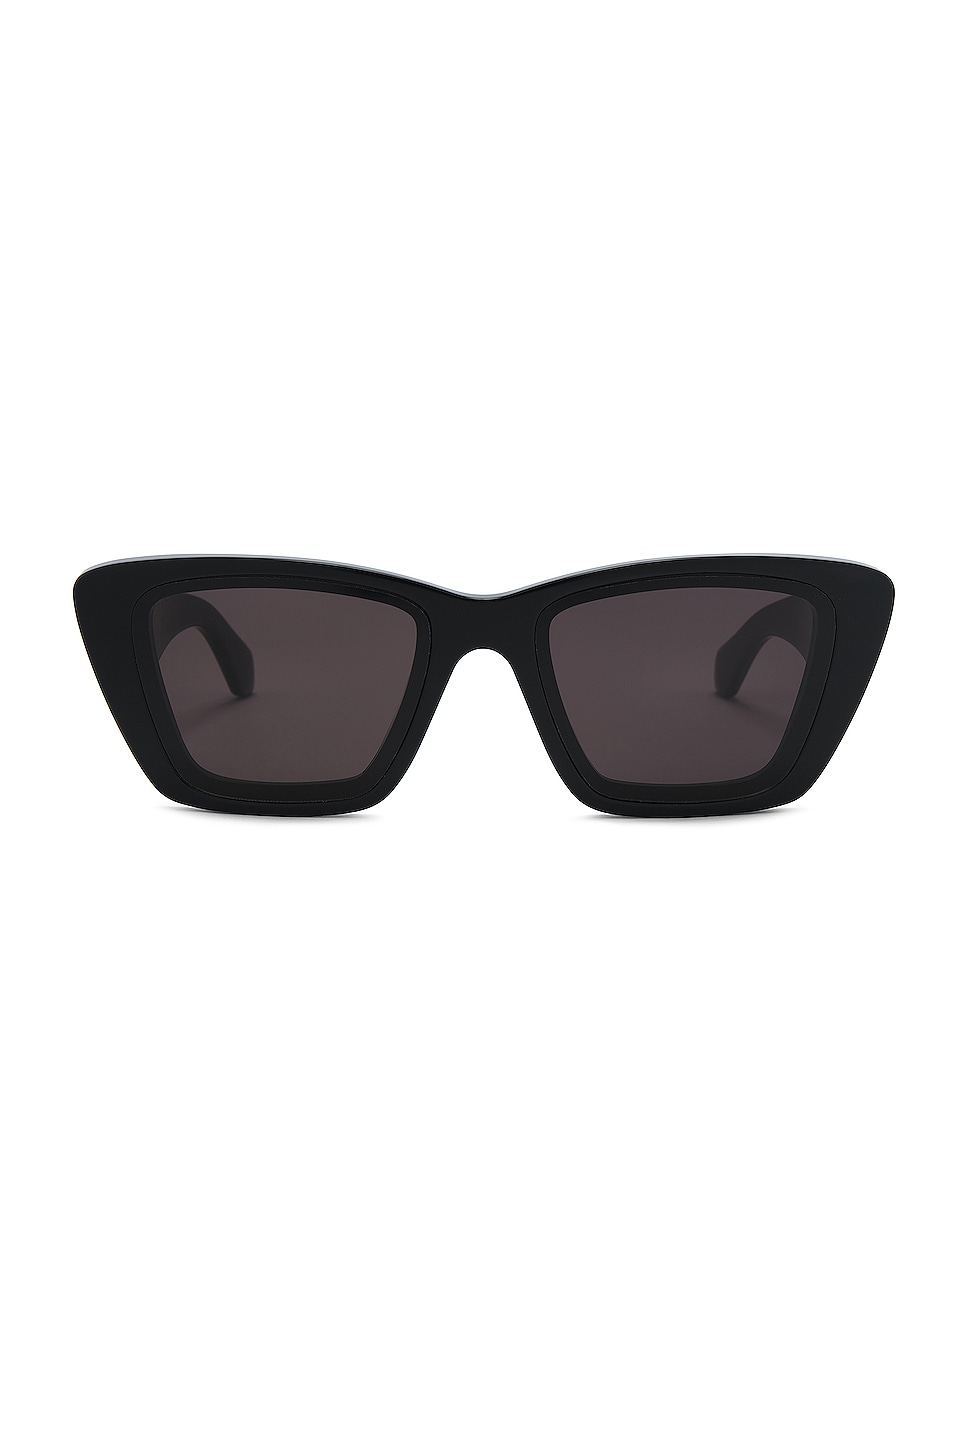 ALAÏA Lettering Logo Rectangular Sunglasses in Black